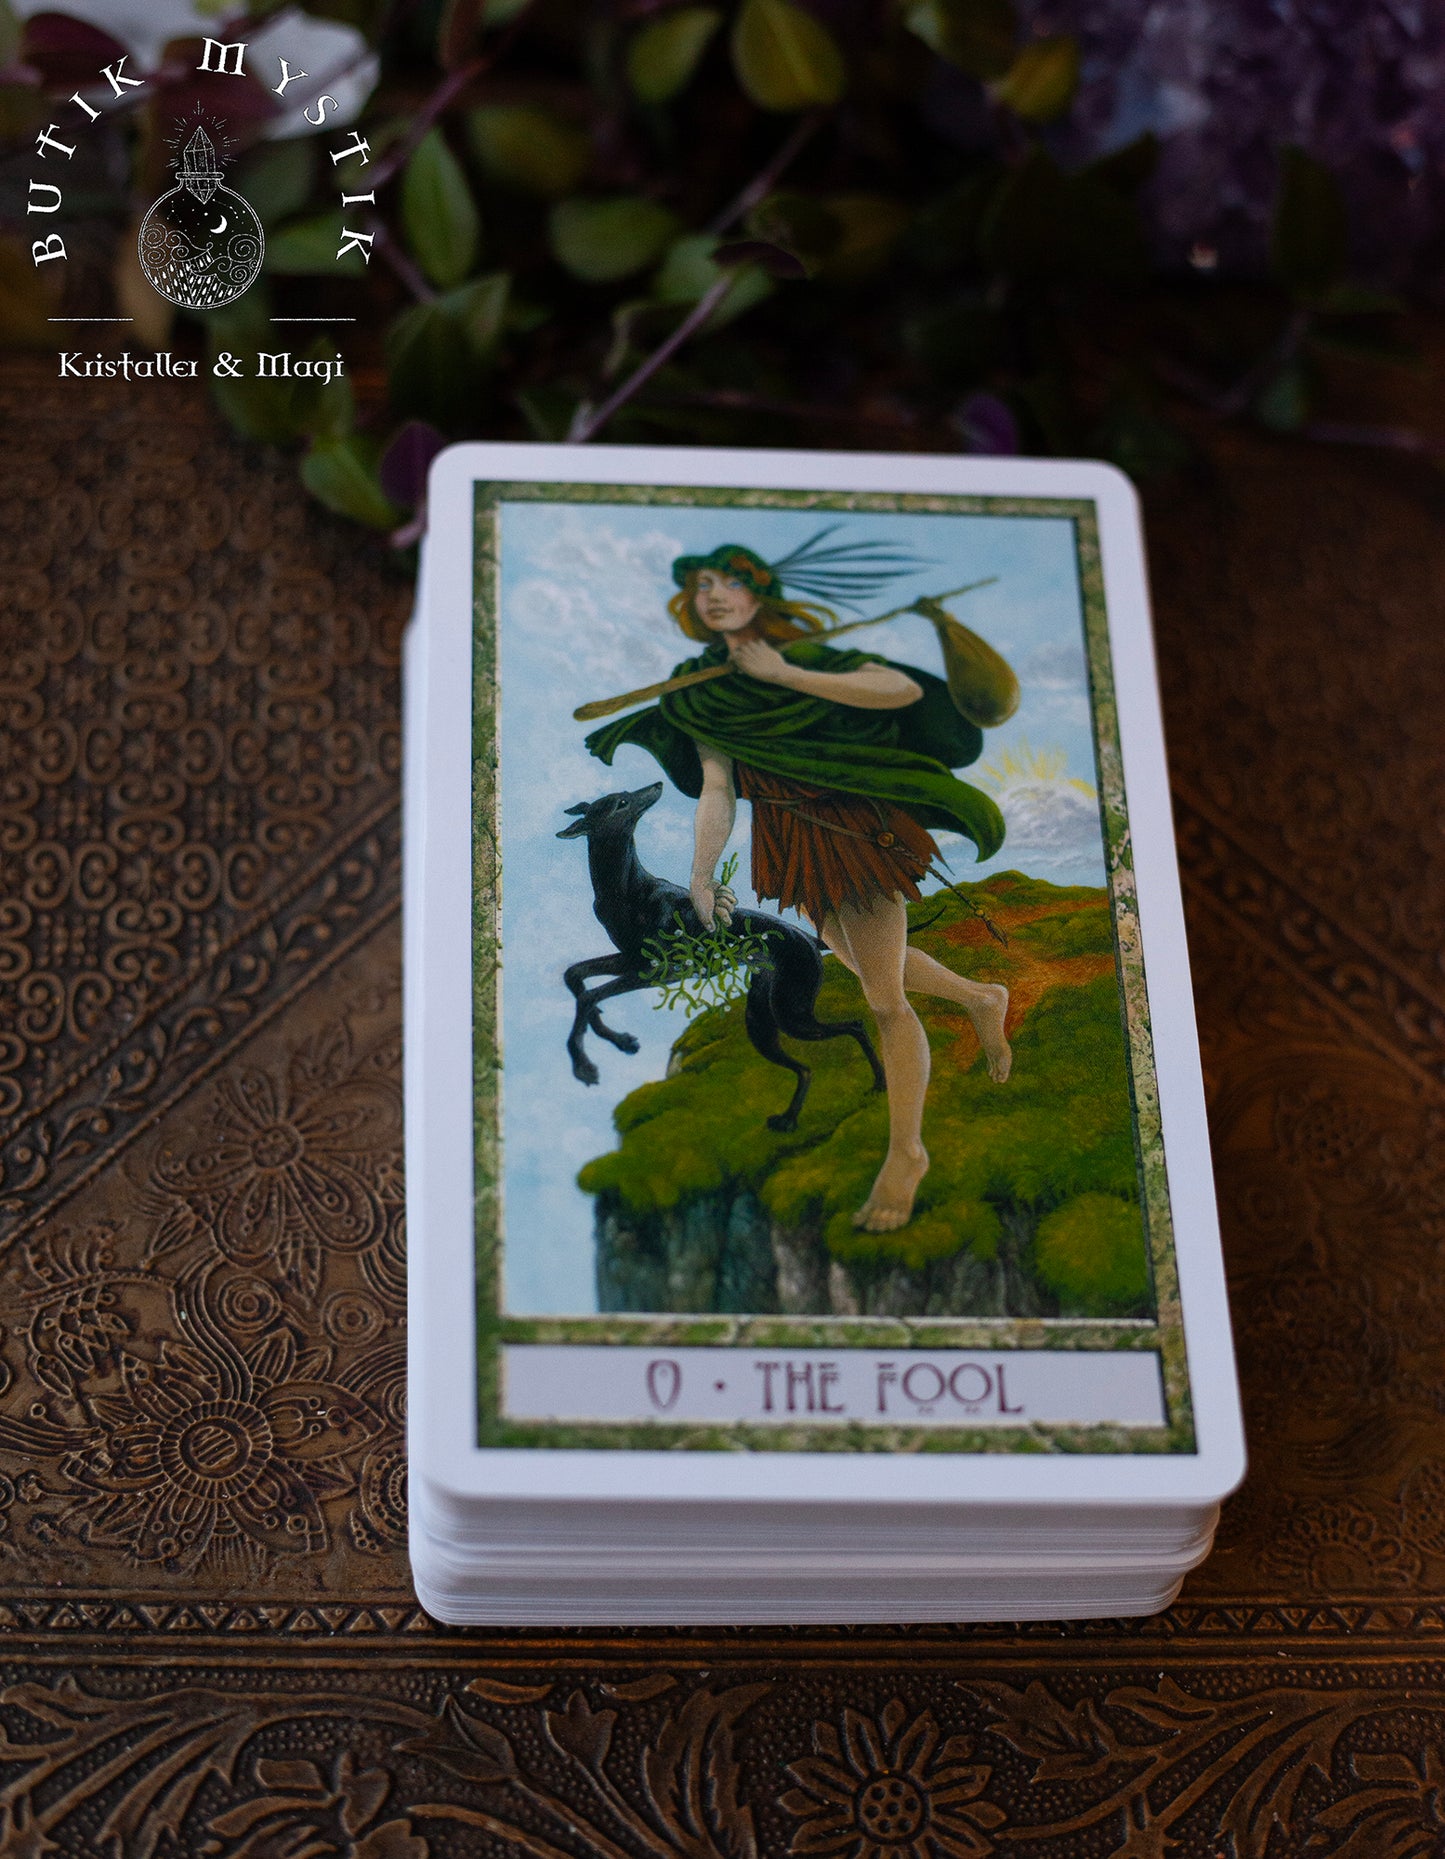 The Druidcraft Tarot - Med stor bok